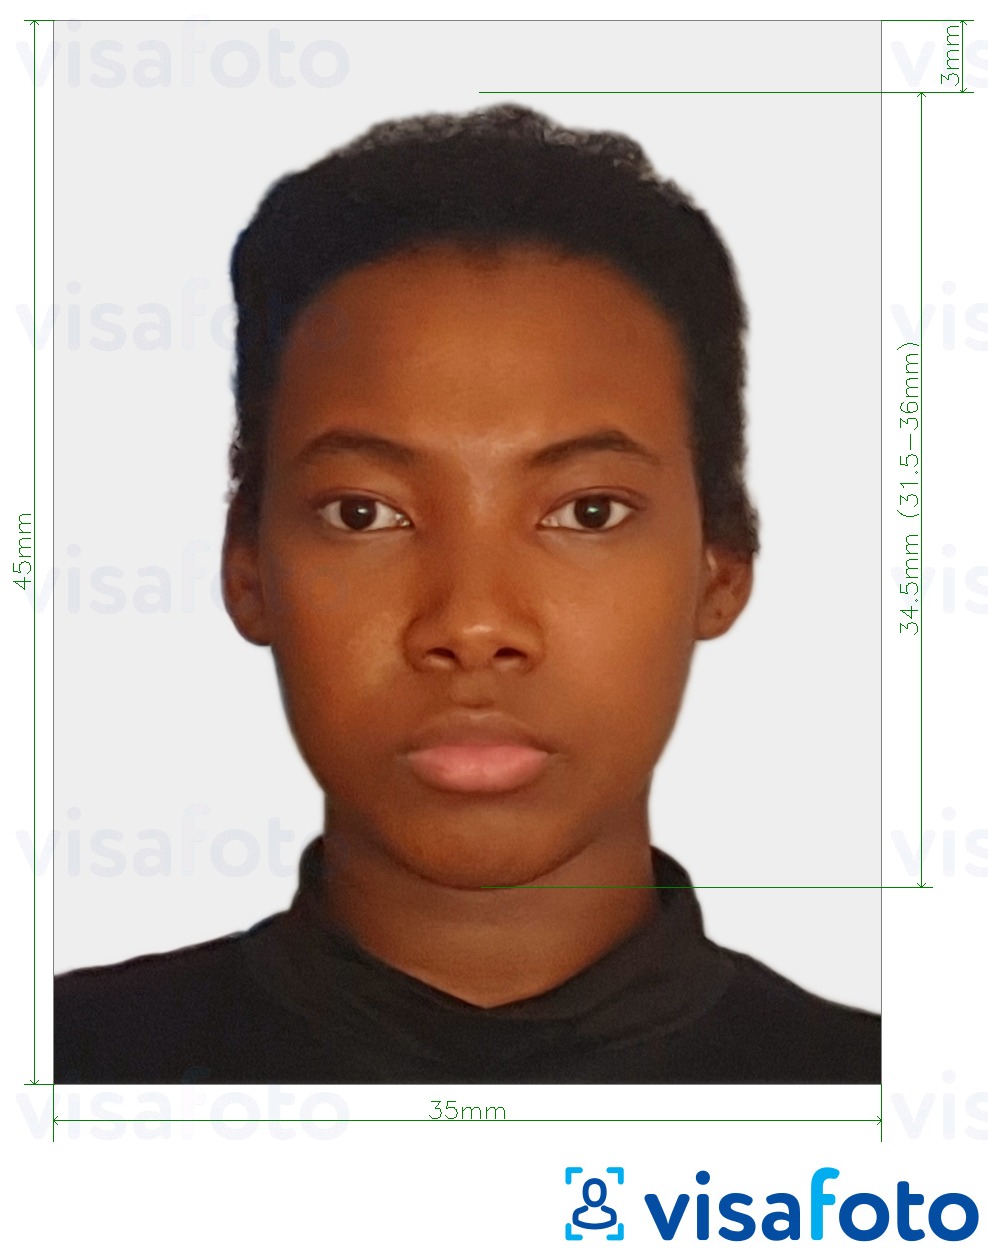 Tam ölçülü dəqiqləşdirmə ilə Surinam pasportu 45x35 mm (1.77x1.37 inç) üçün şəkil nümunəsi